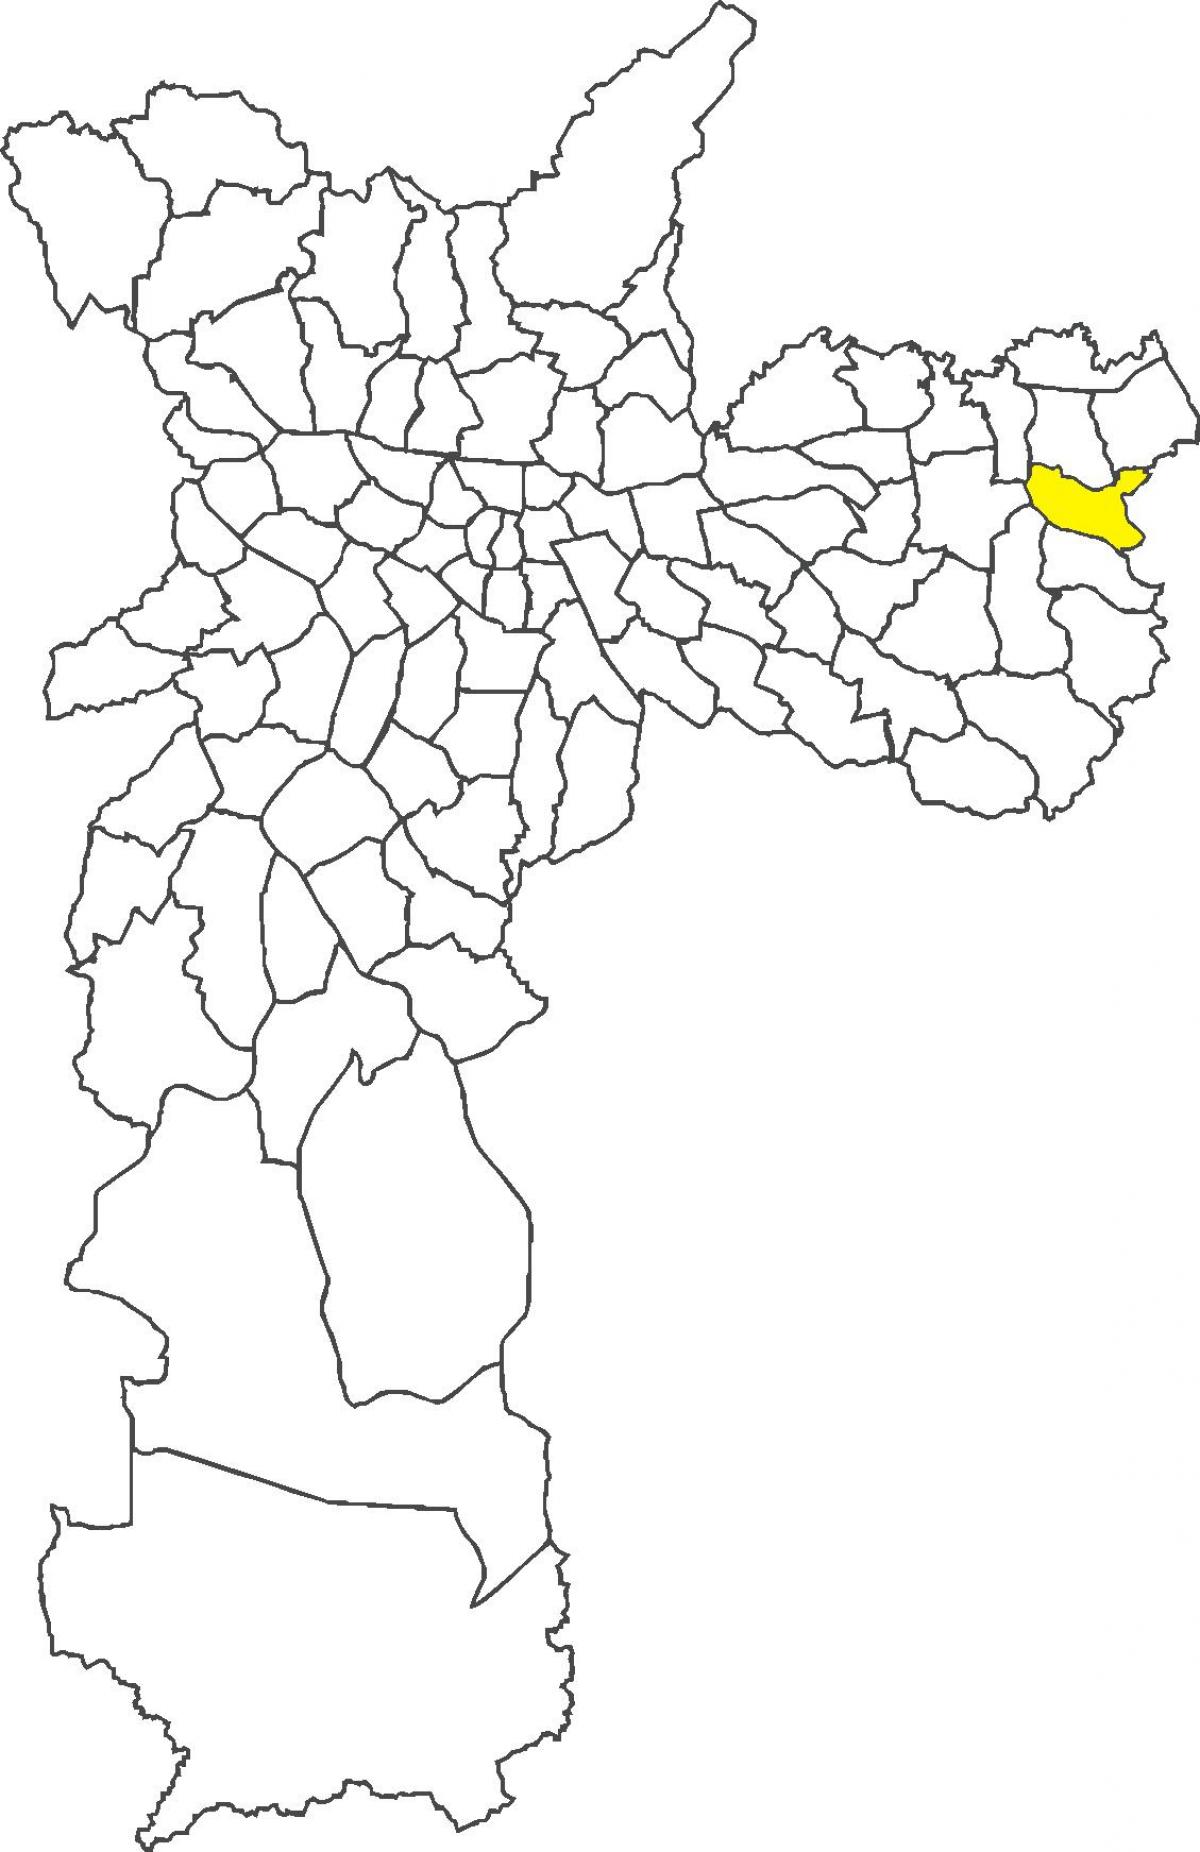 نقشہ کے Lajeado ضلع